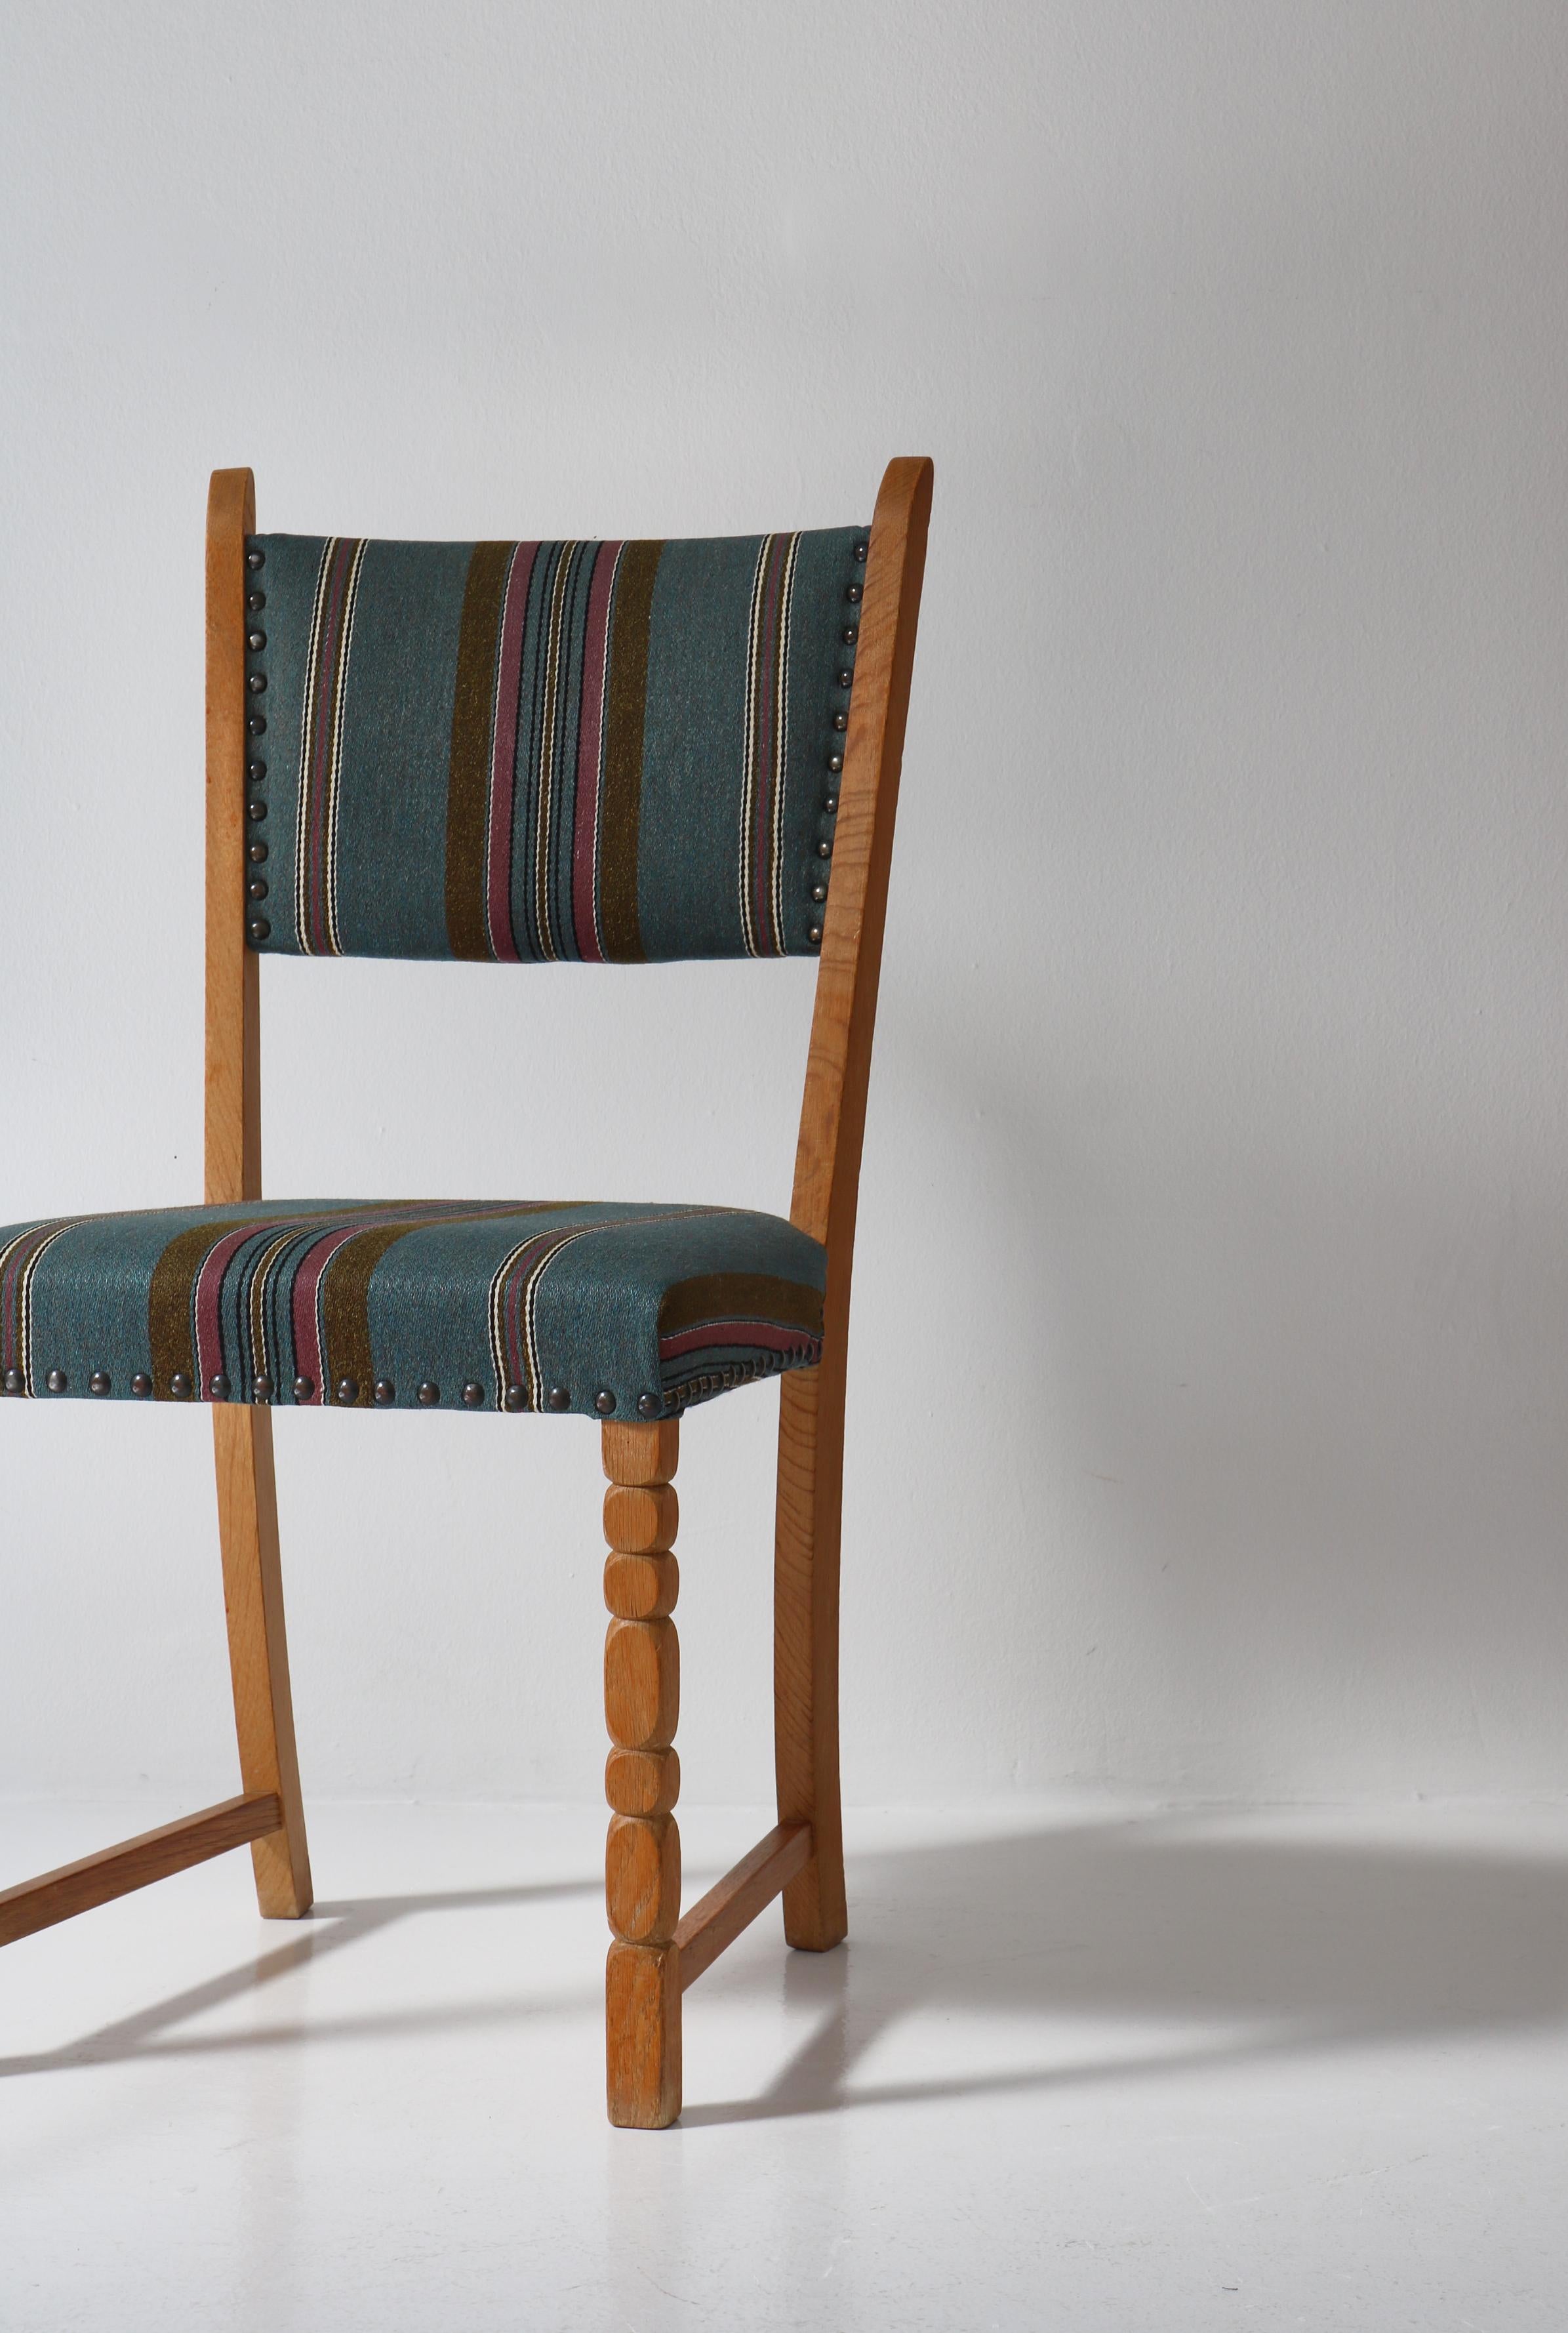 1960s Side Chair in Oak & Wool Fabric by Henry Kjærnulf, Danish Modern For Sale 4